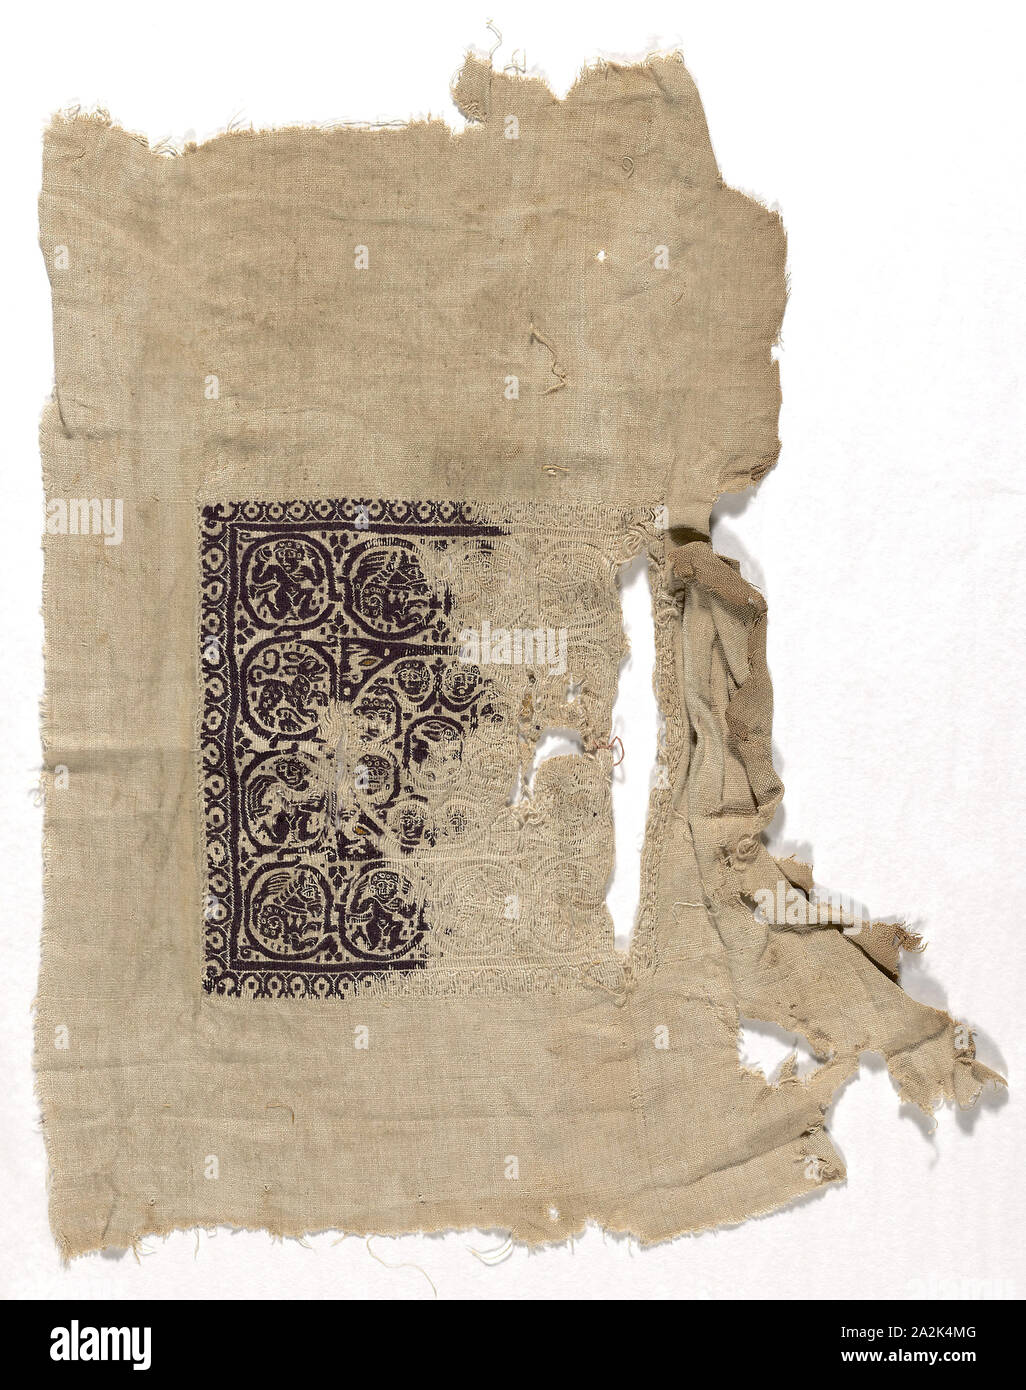 Fragment, période romaine (30 av. J.-C.- 641 après J.C.)/période arabe (641-969)/période fatimide (969-1171), 3e/ 10e siècle, l'Egypte, l'Egypte, 53 × 42,3 cm (20 7/8 x 16 5/8 po Banque D'Images